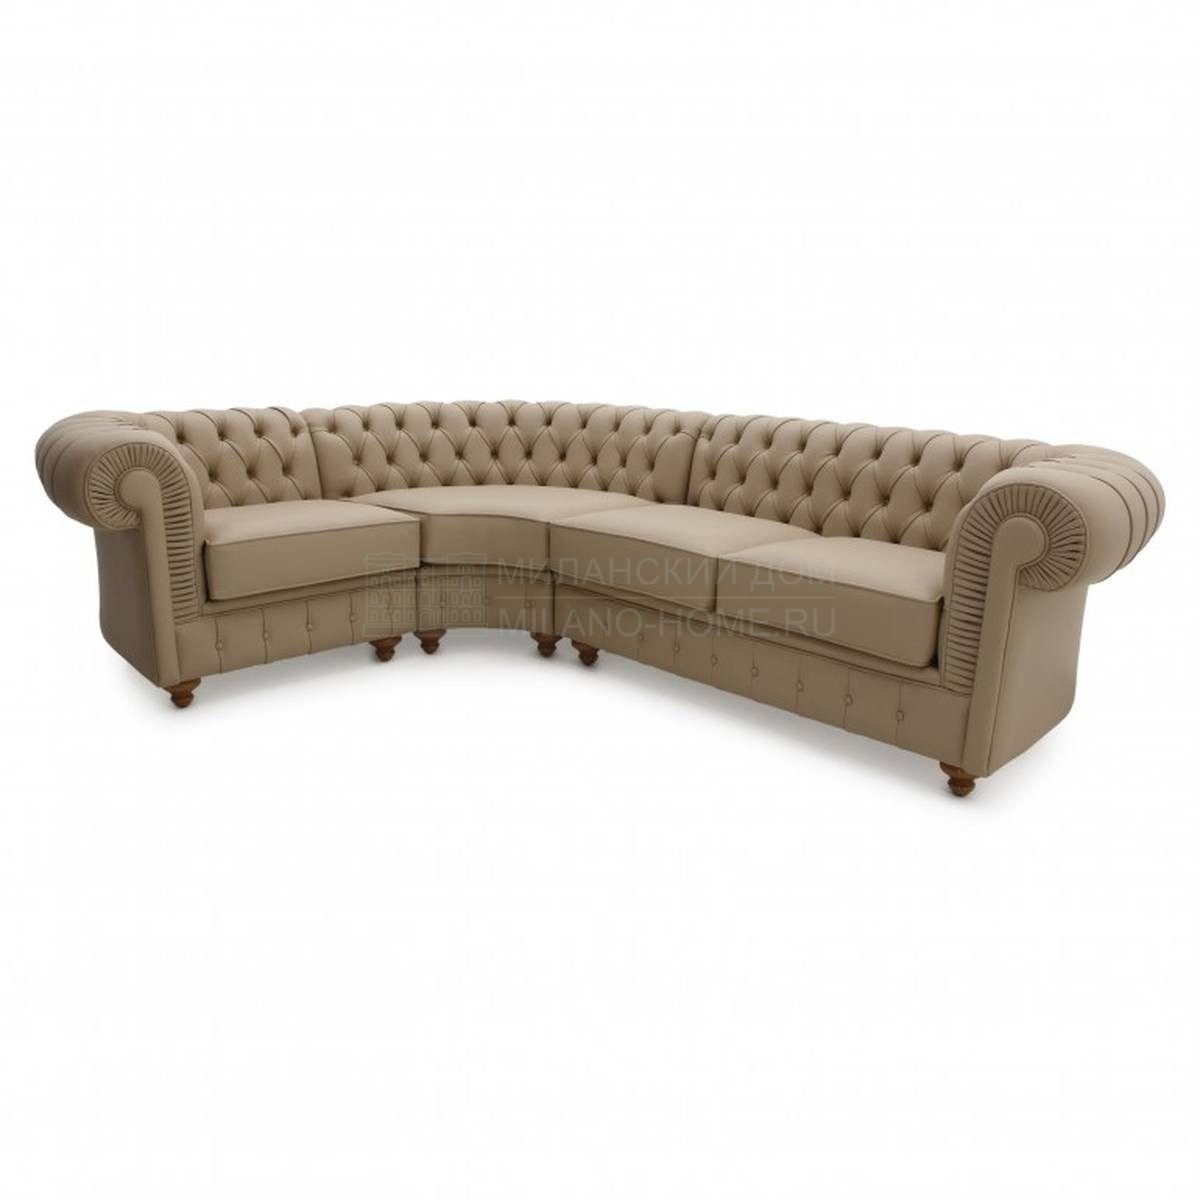 Угловой диван Custom019 из Италии фабрики SEVEN SEDIE